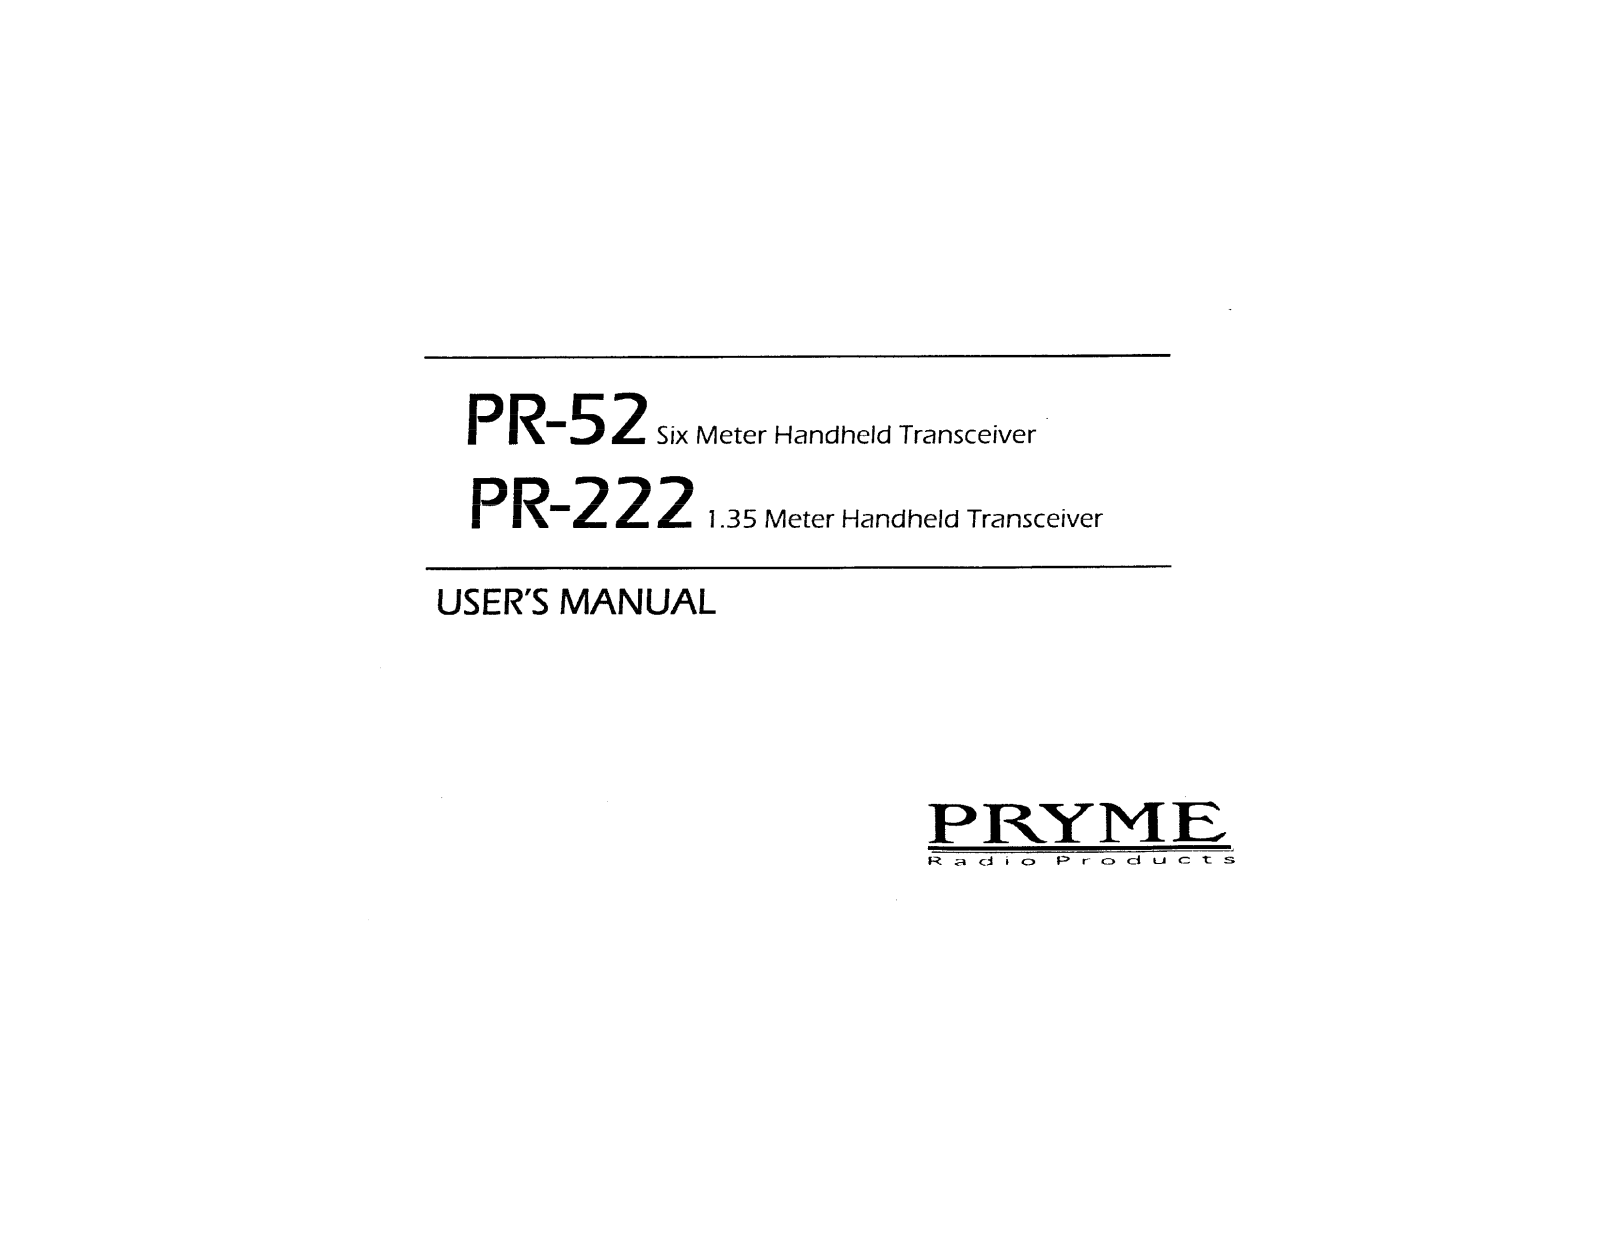 Pryme PR-222, PR-52 Manual